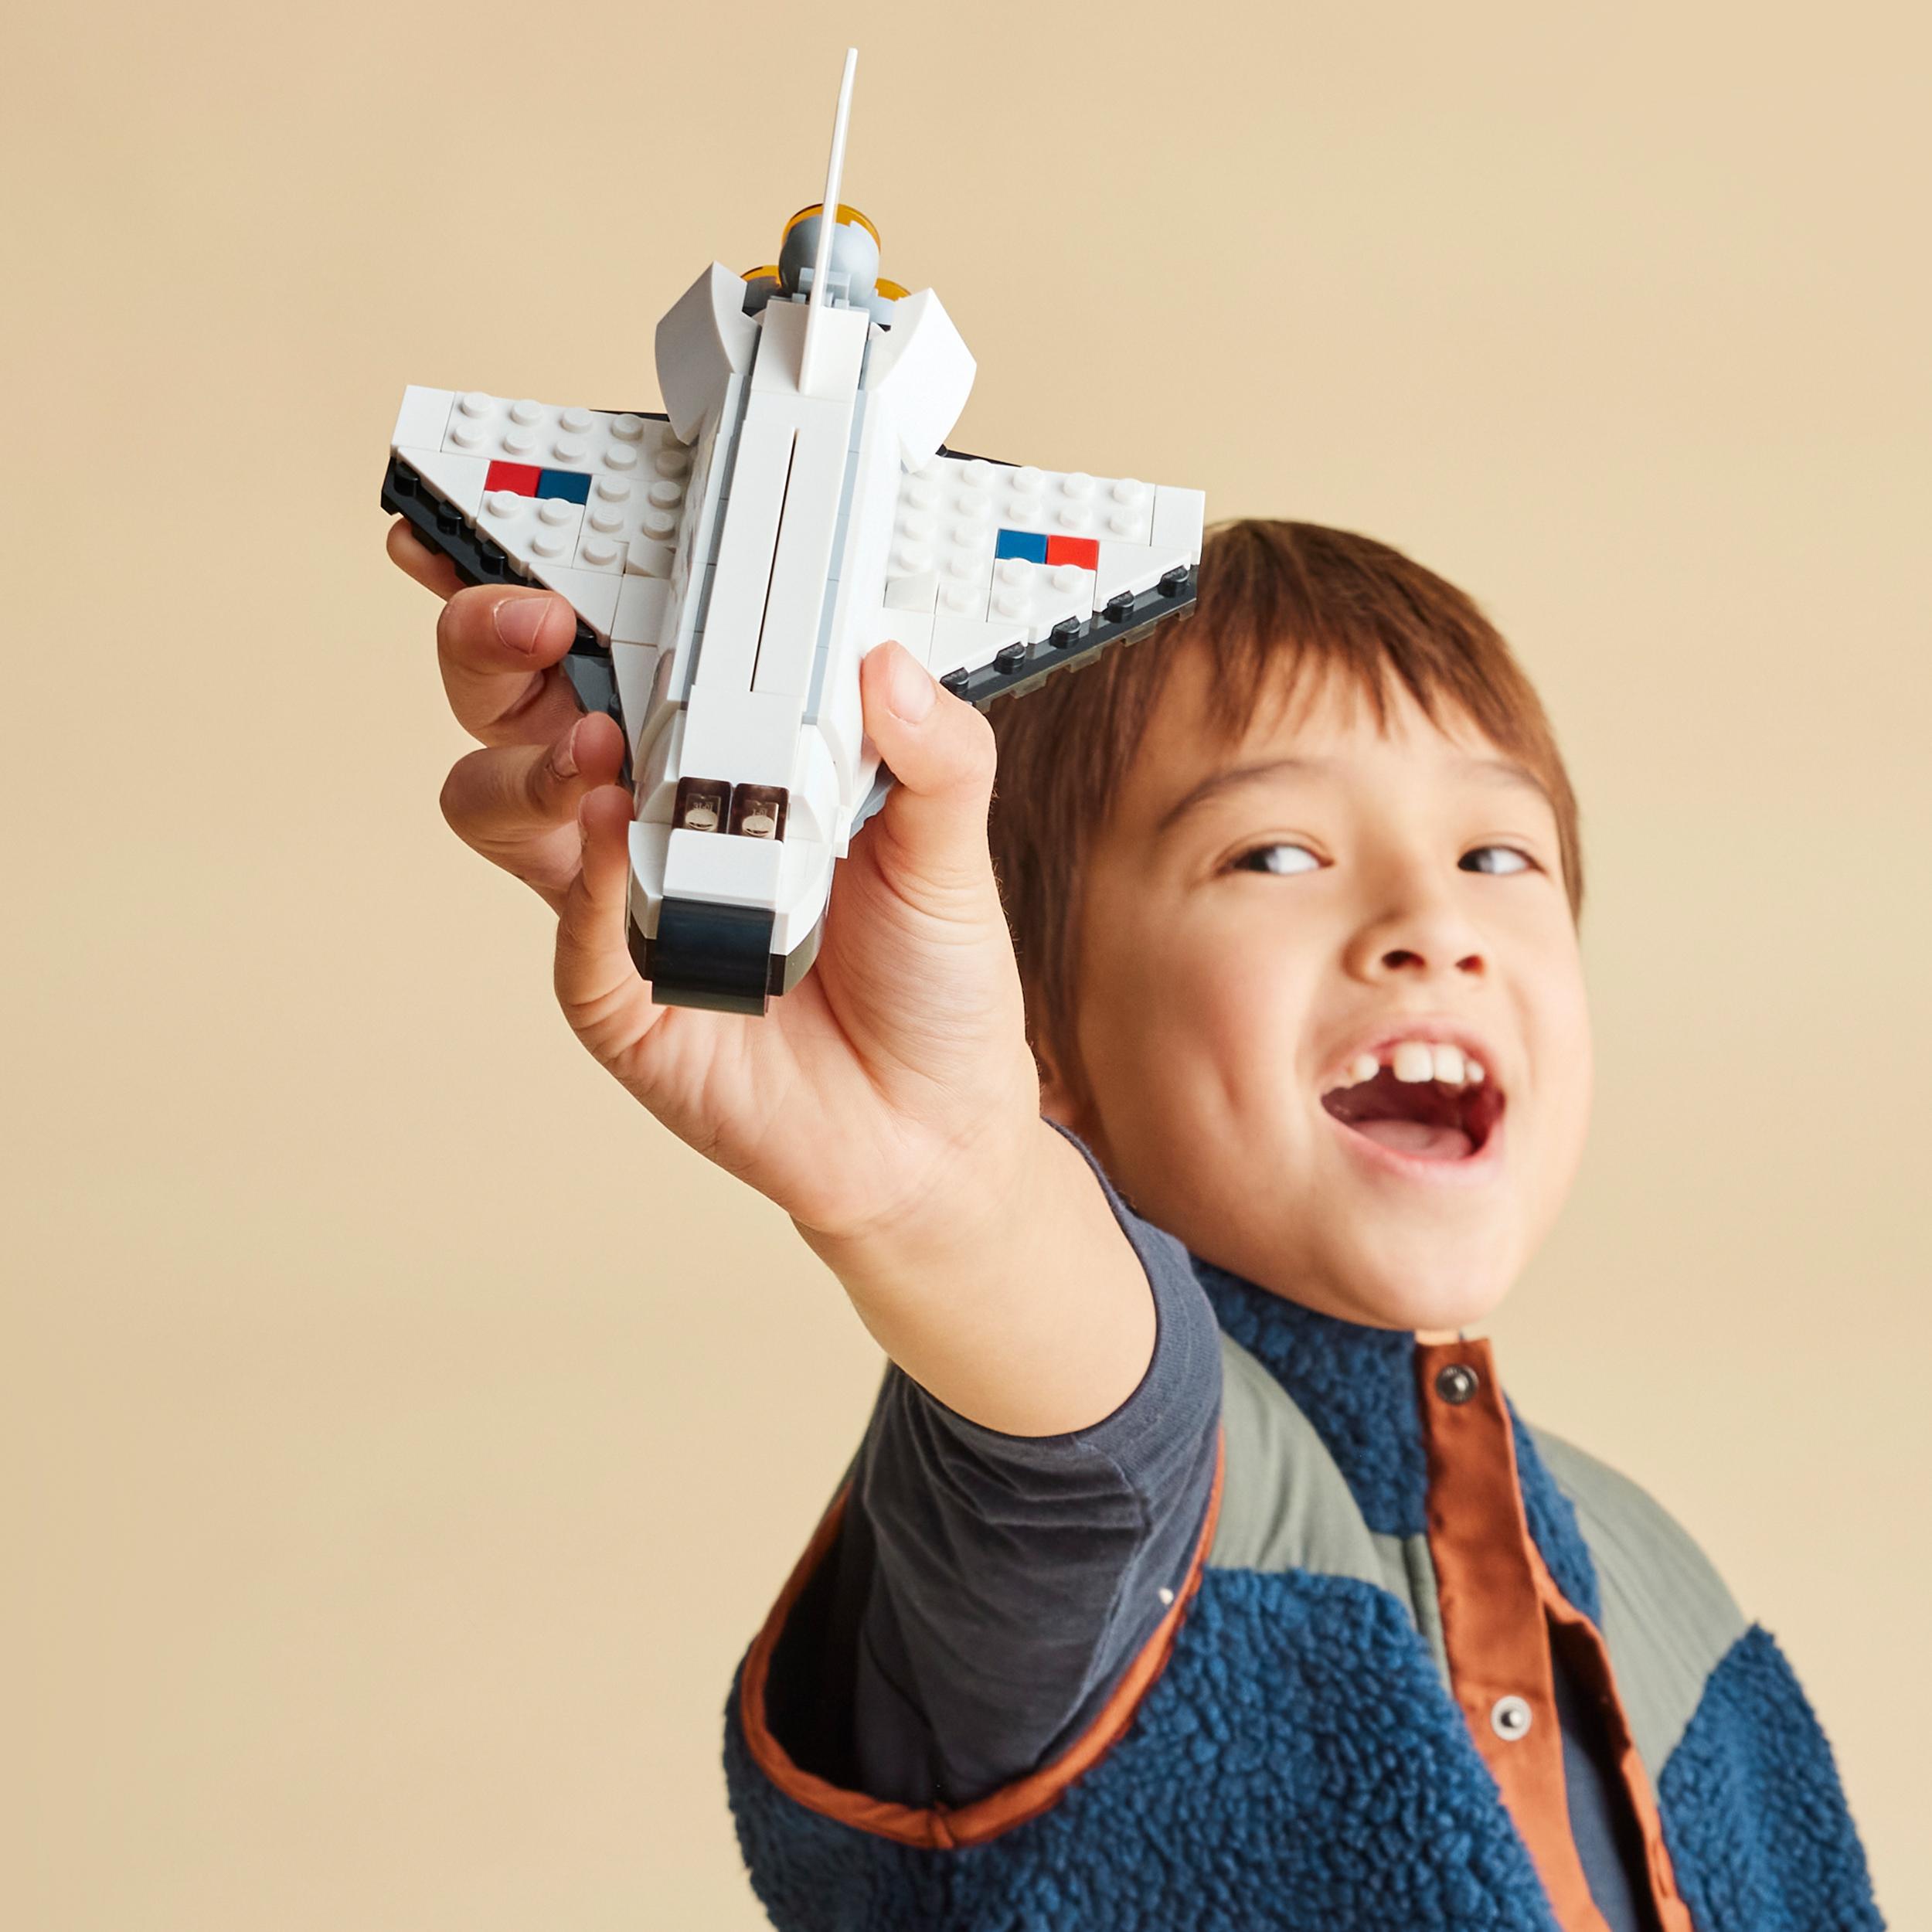 Lego creator 31134 space shuttle, set 3 in1 con astronauta e astronave giocattolo, giochi per bambini 6+ idea regalo creativa - LEGO CREATOR